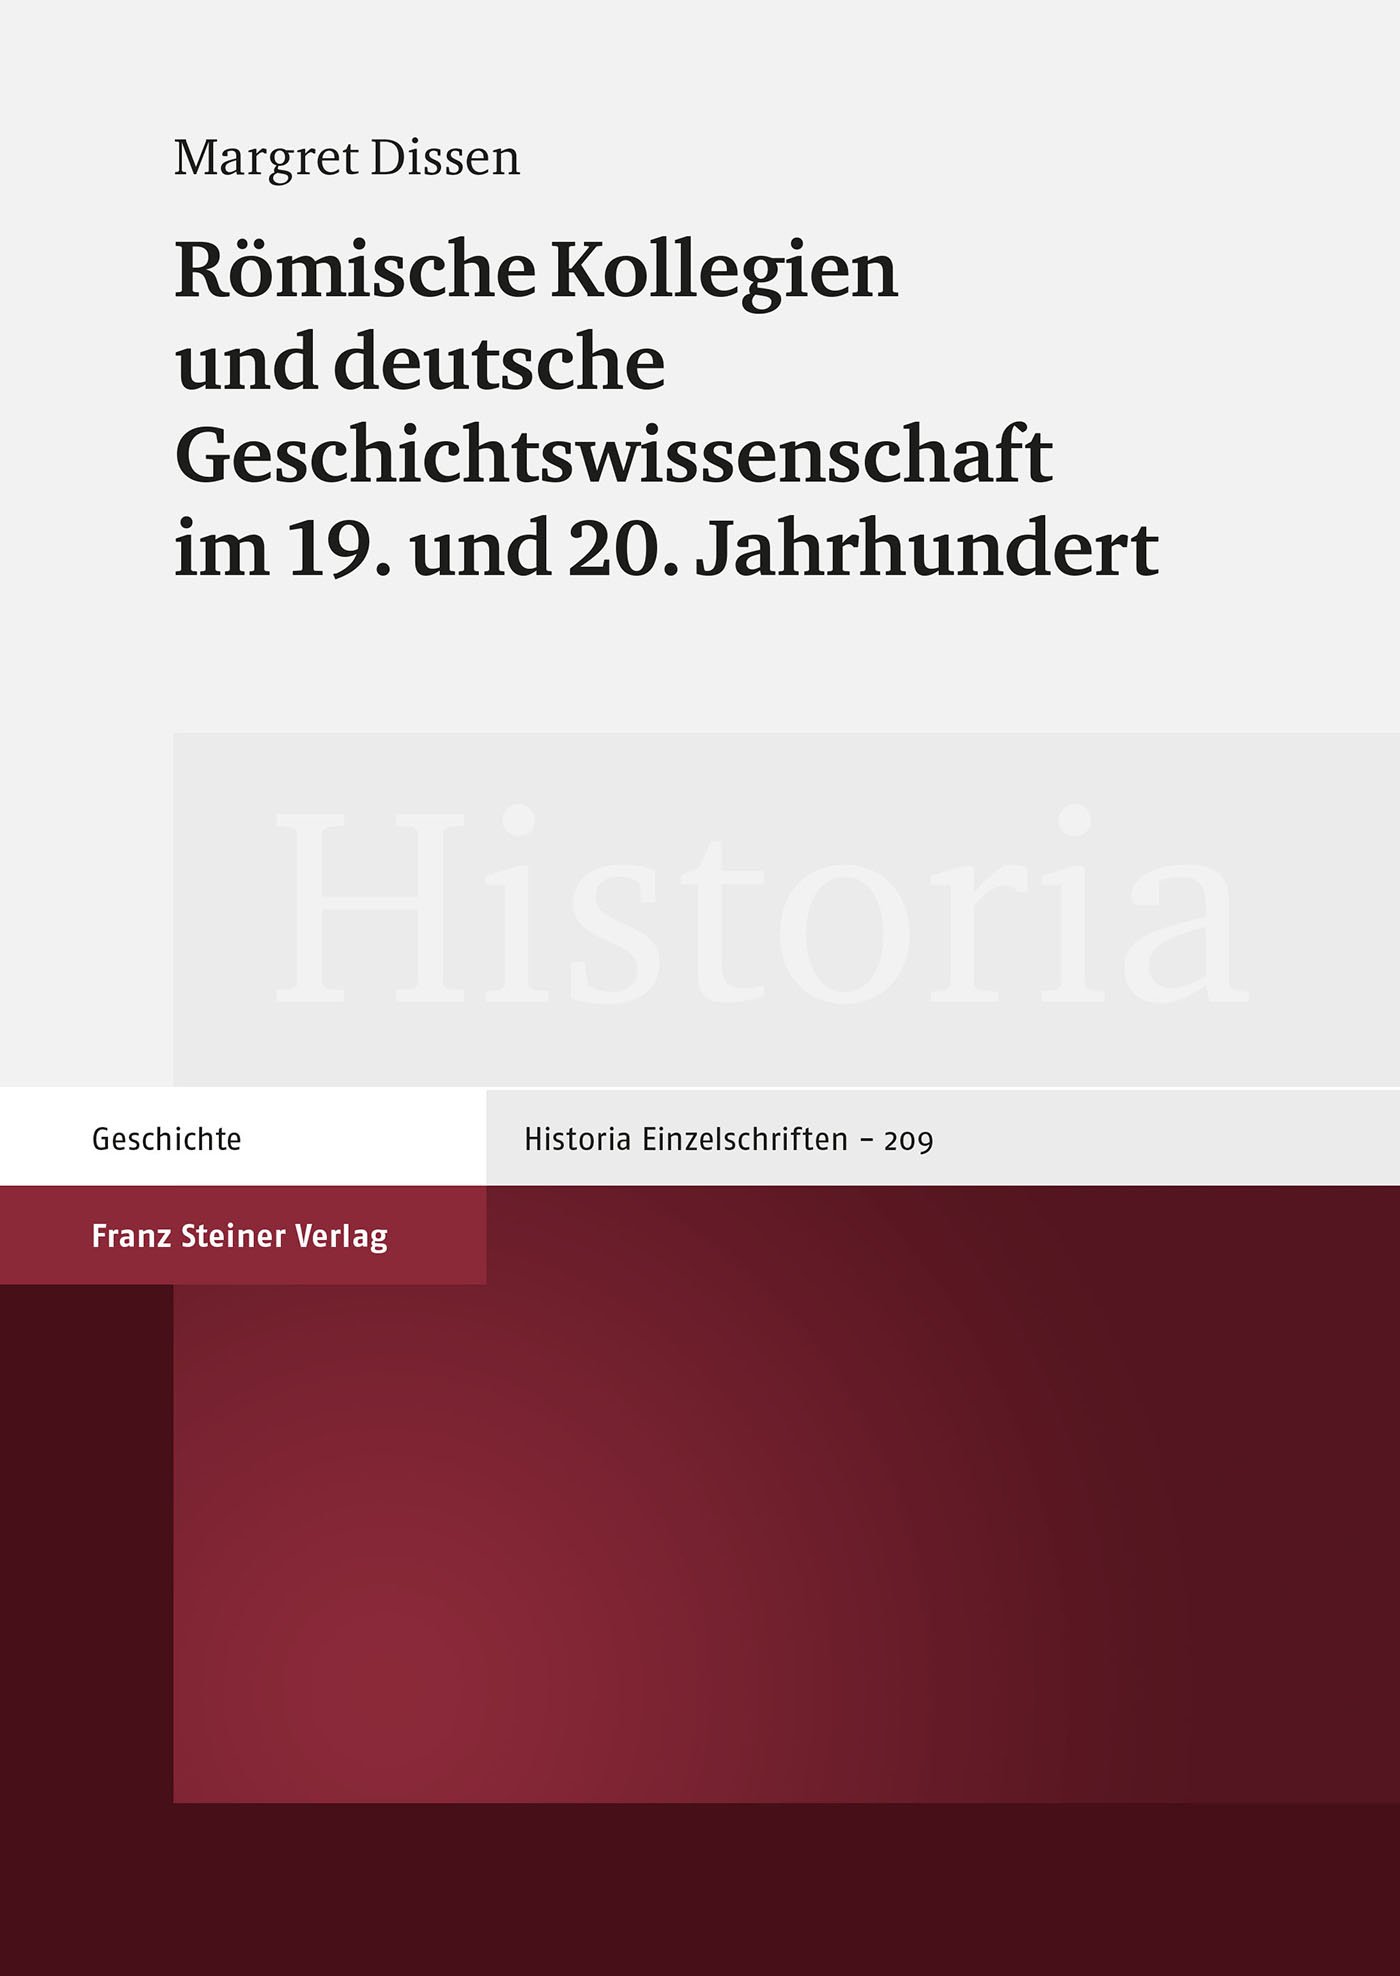 Römische Kollegien und deutsche Geschichtswissenschaft im 19. und 20. Jahrhundert